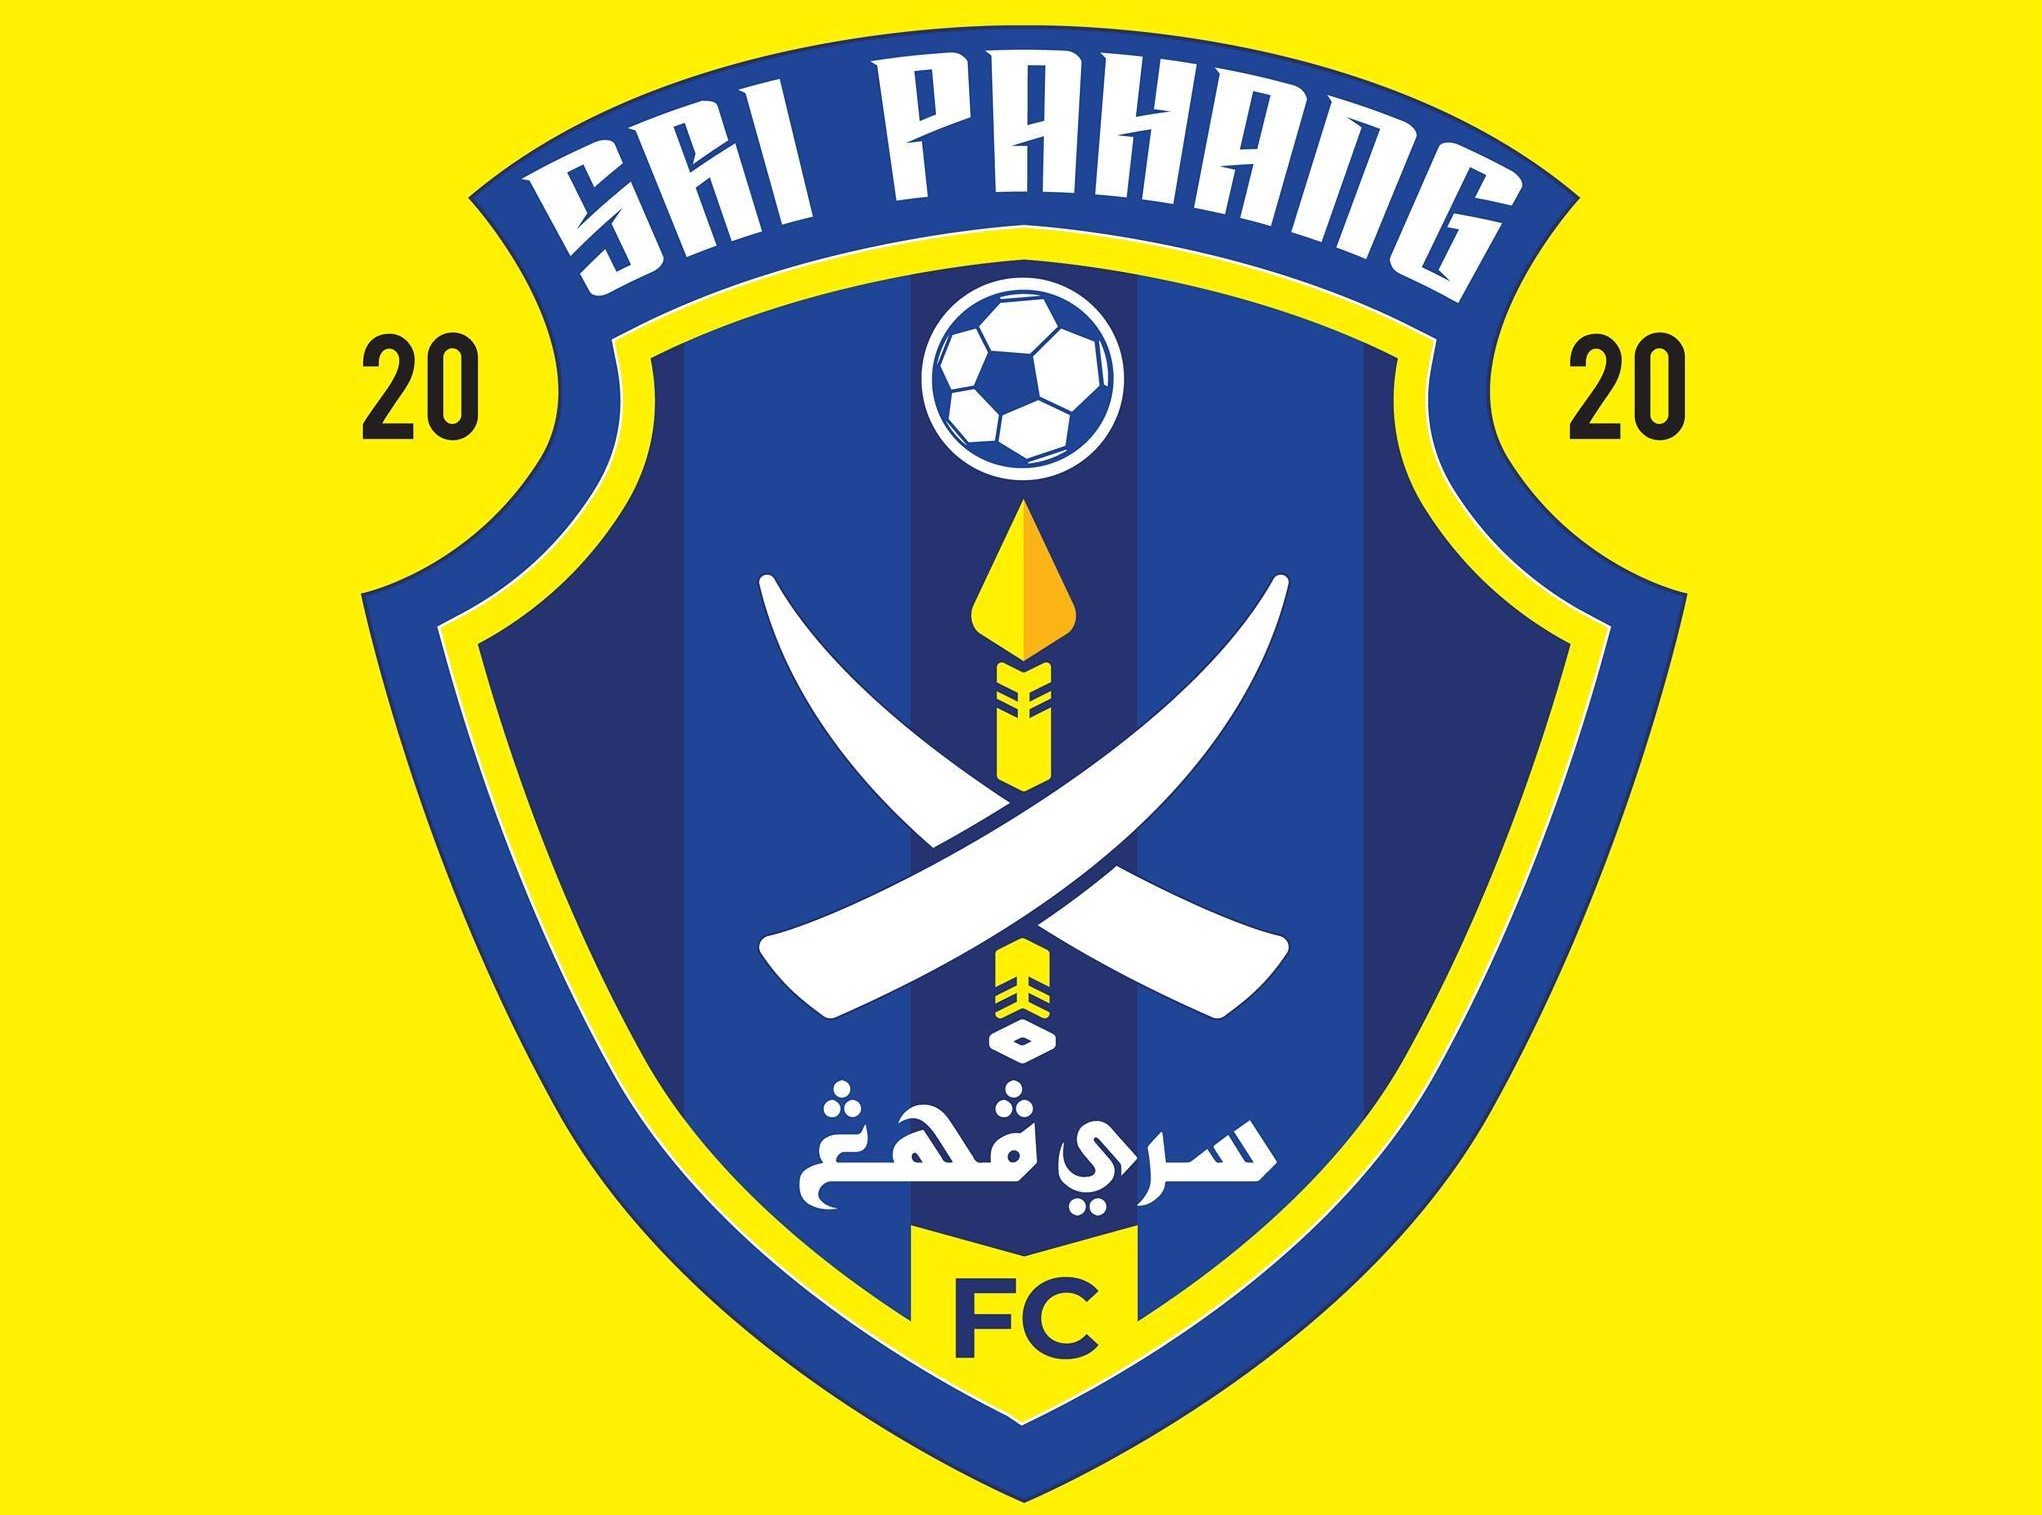  Logo  Sri Pahang  FC mantap tak Utusan Digital